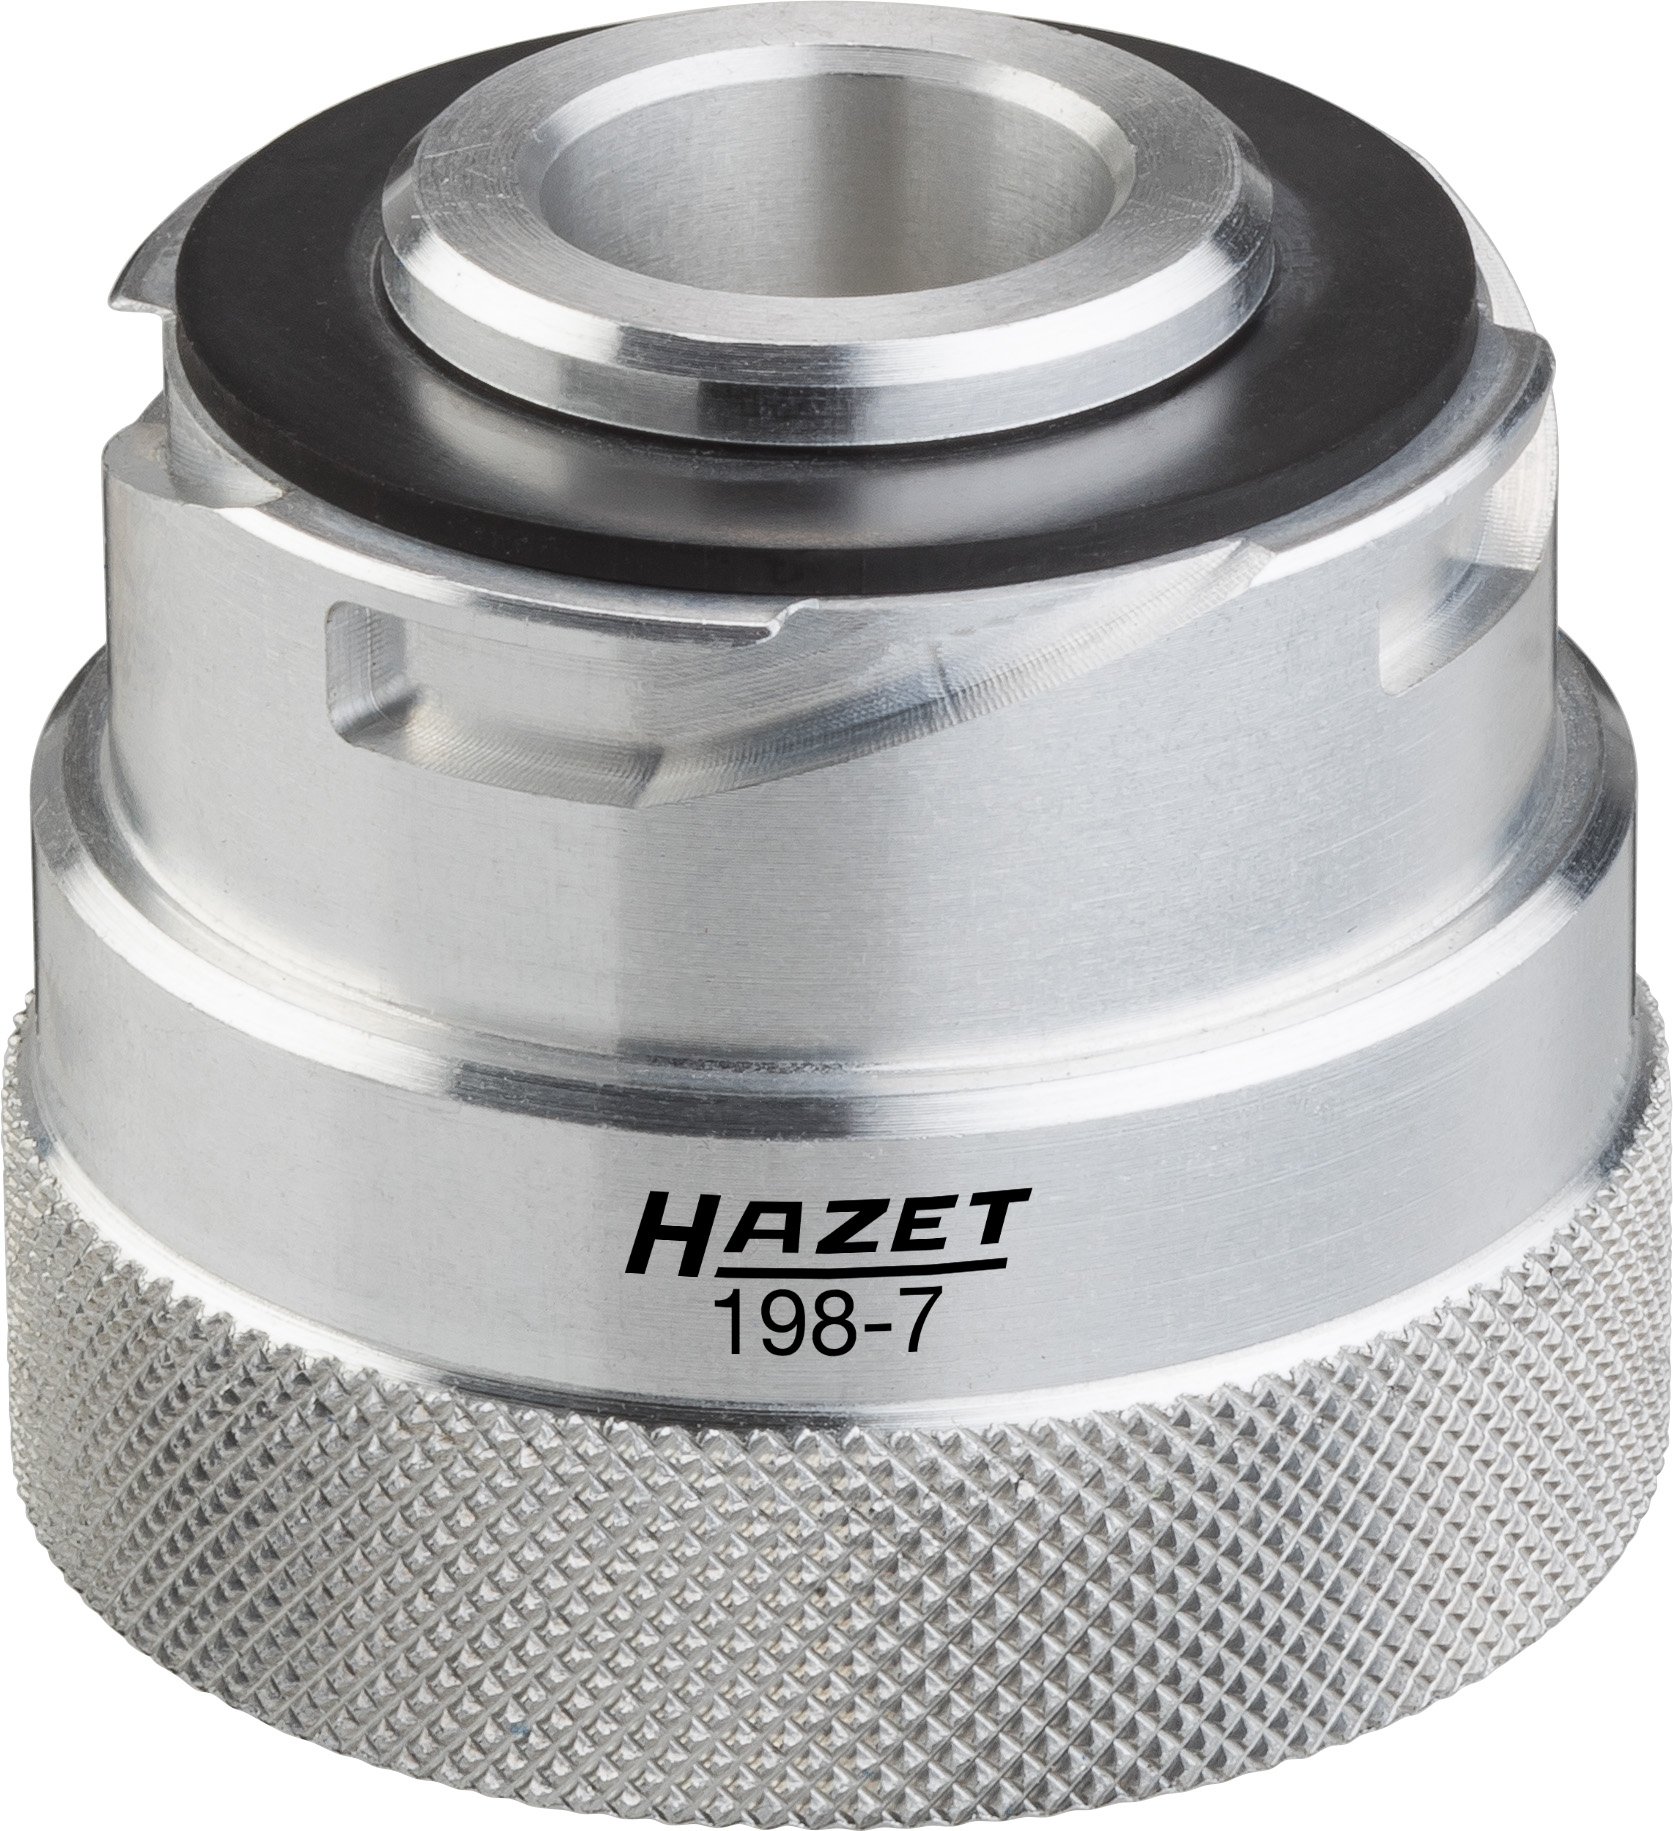 HAZET 198-7 Adapter für Motoröl-Fülltrichter 198-9 von Hazet